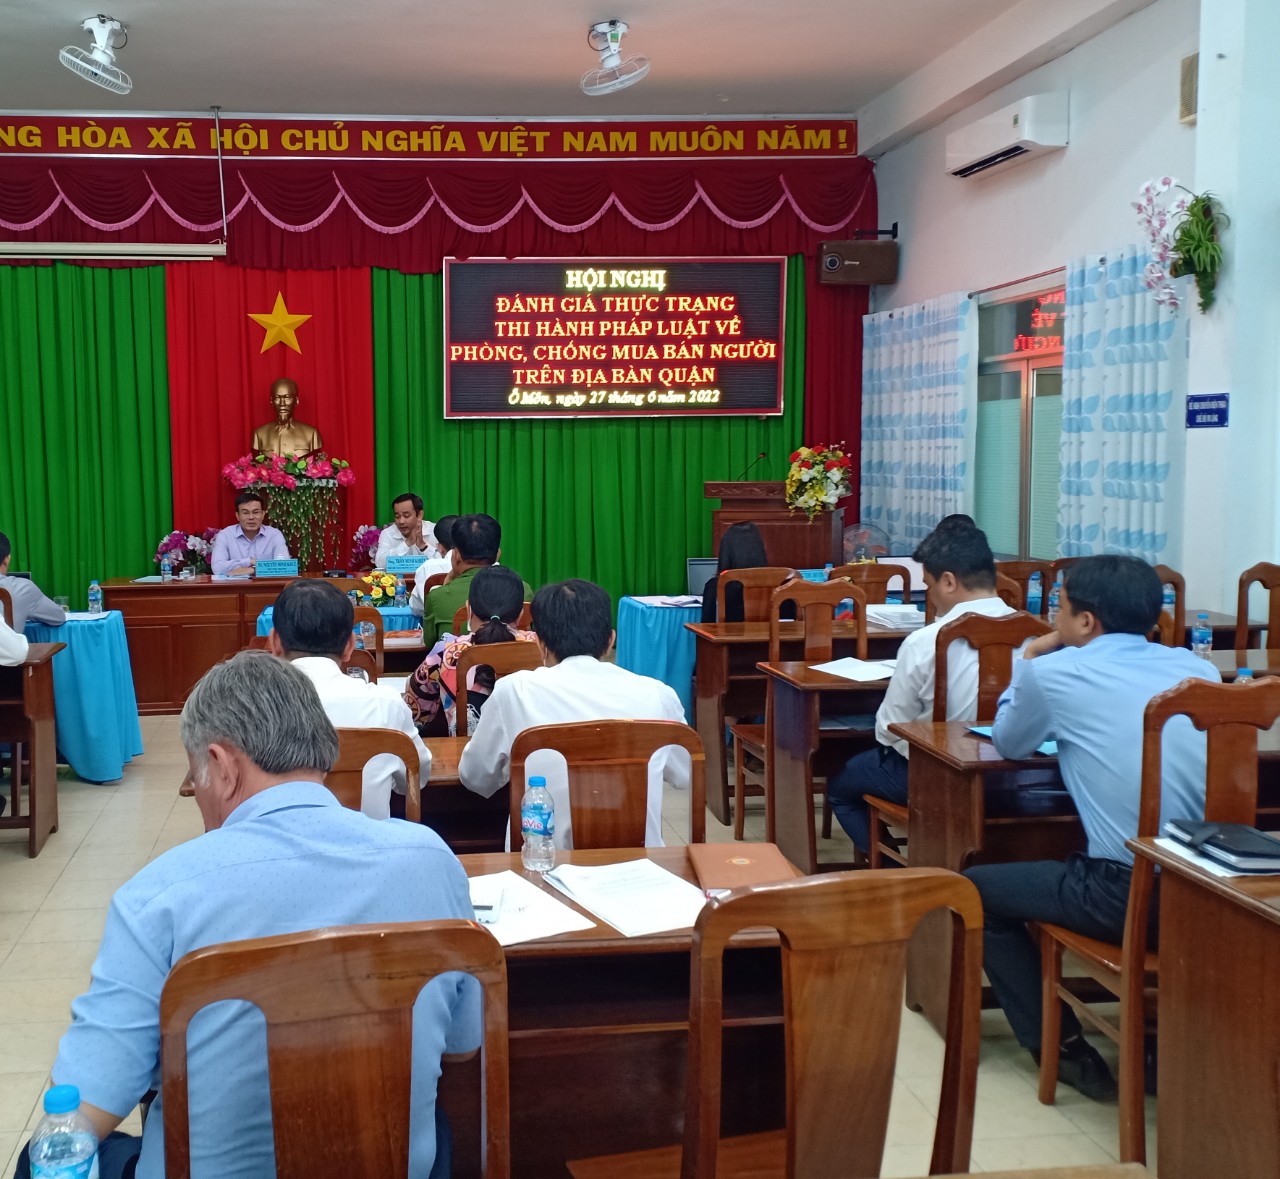 Chương trình Hội nghị thực trạng thi hành pháp luật phòng, chống mua bán người trên địa bàn quận Ô Môn, thành phố Cần Thơ                     